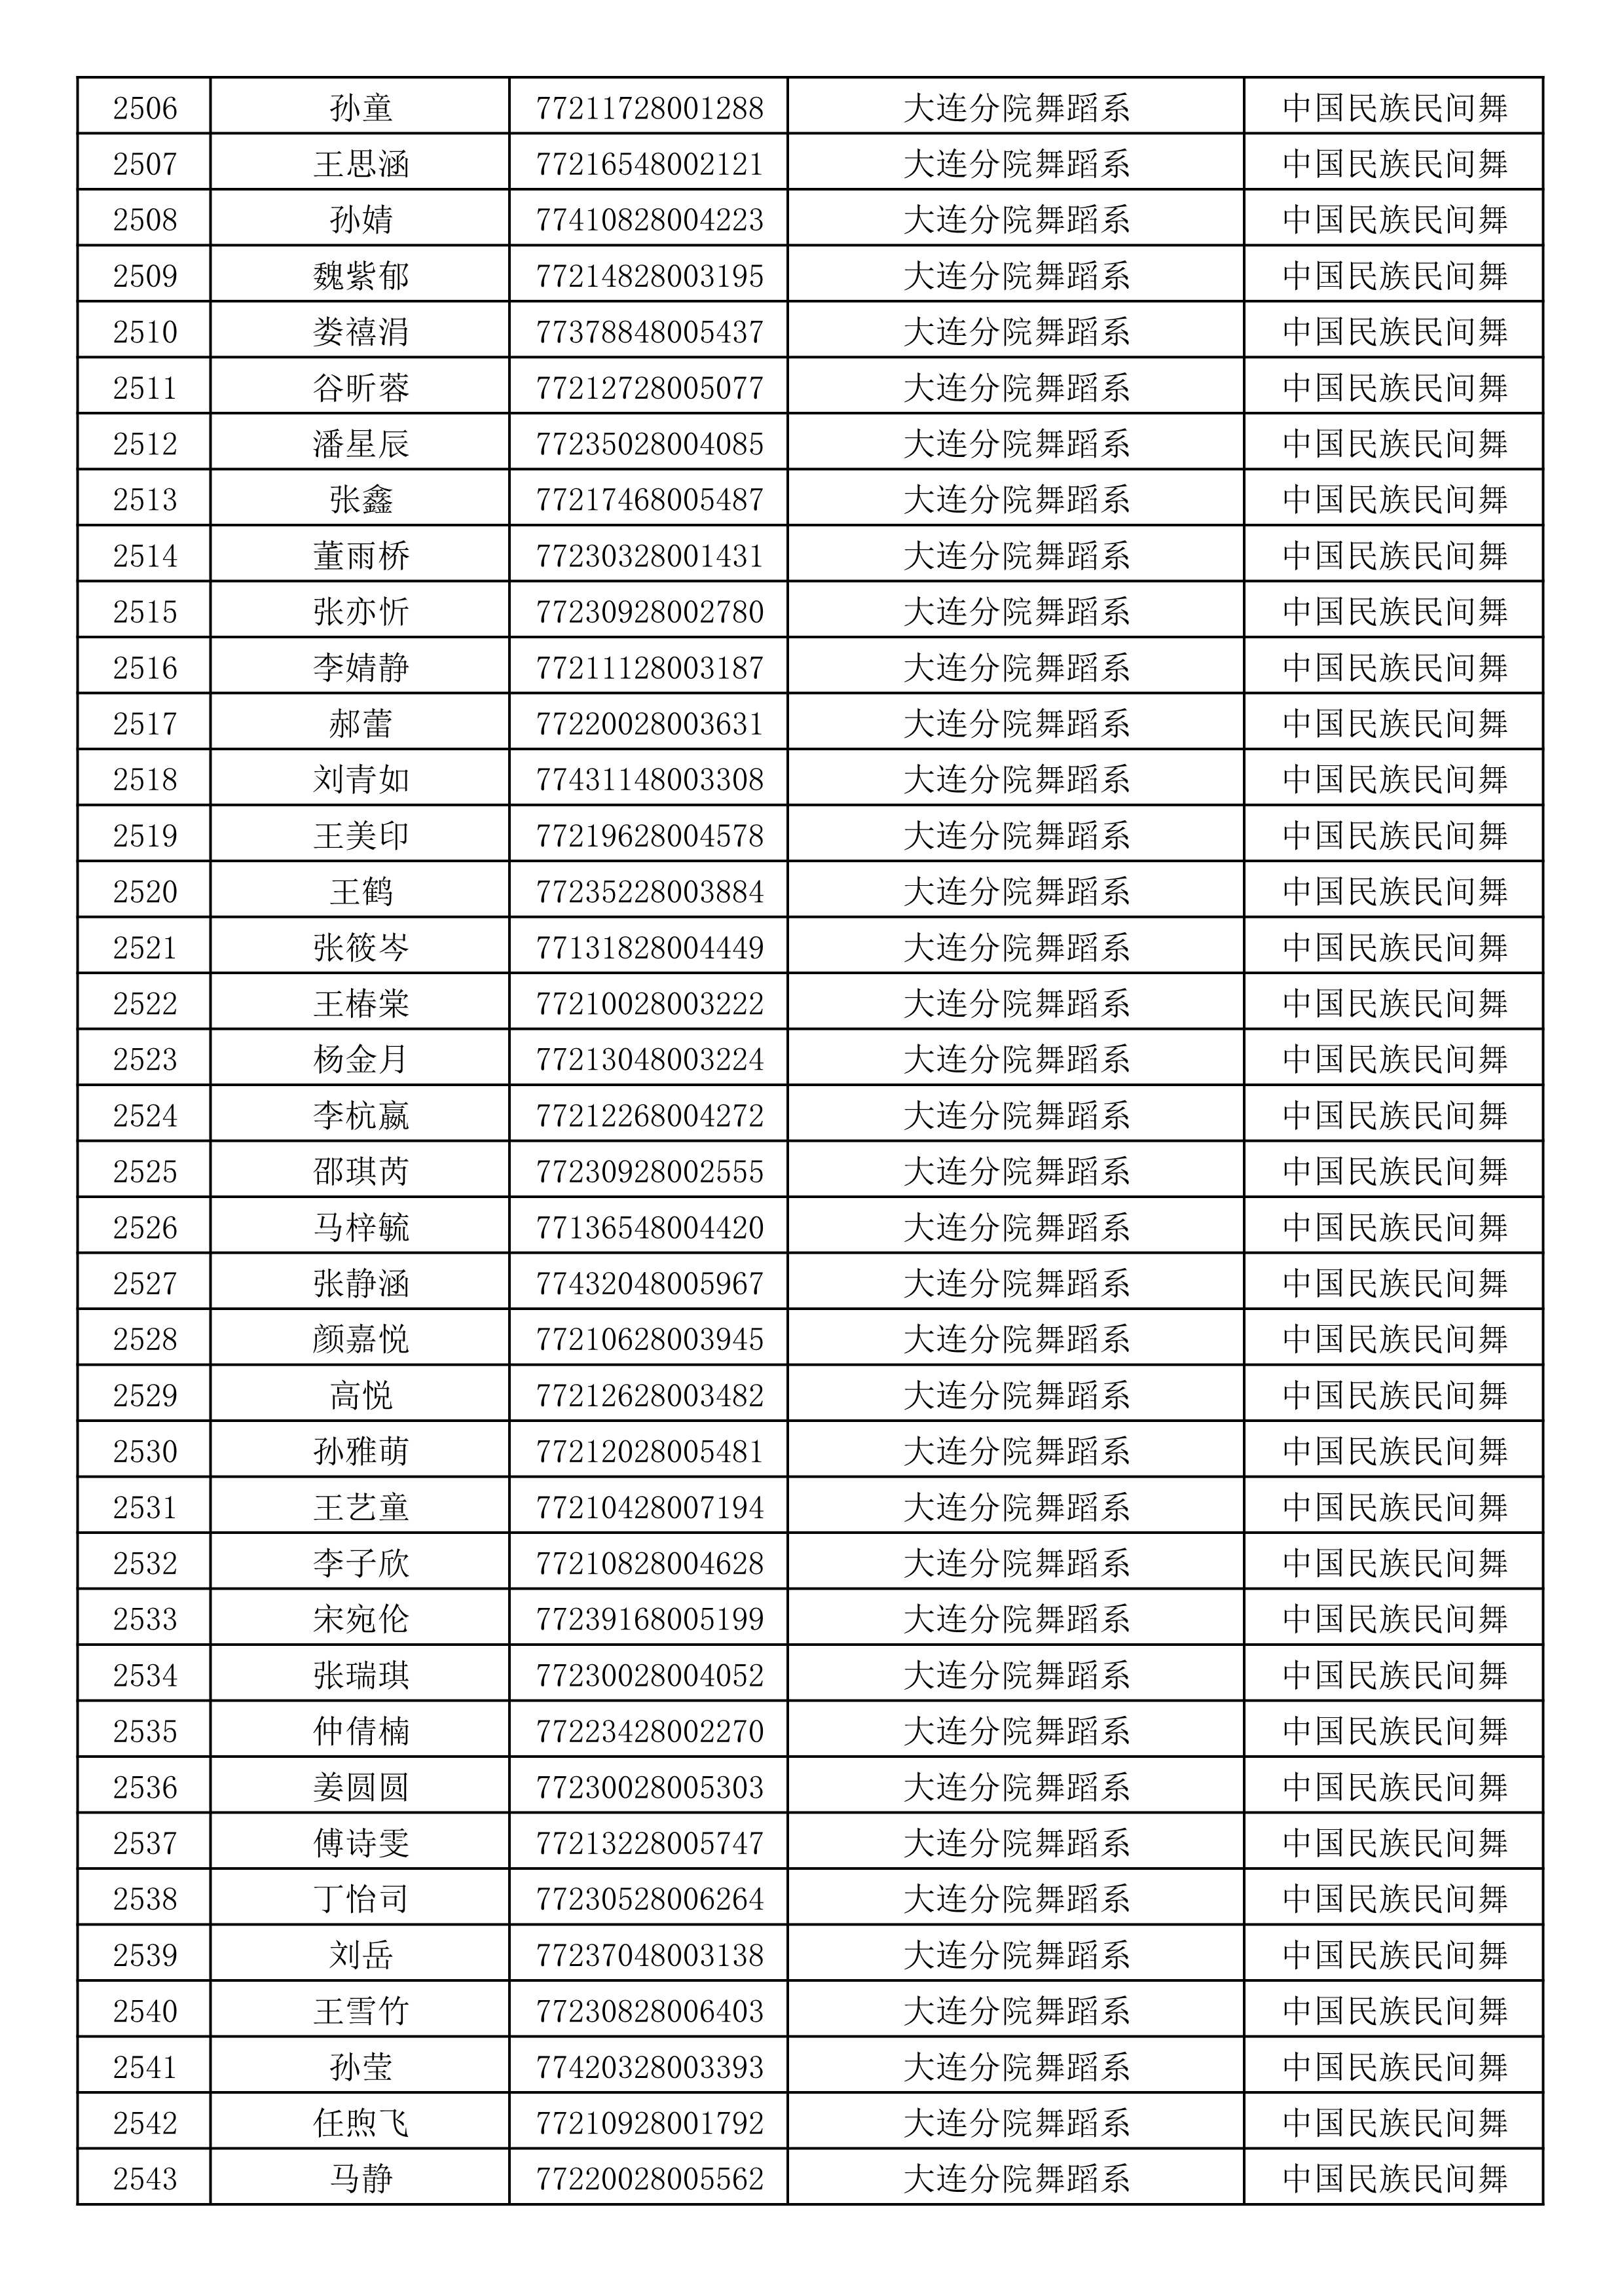 沈阳音乐学院2019年本科招生考试初试合格名单_67.jpg